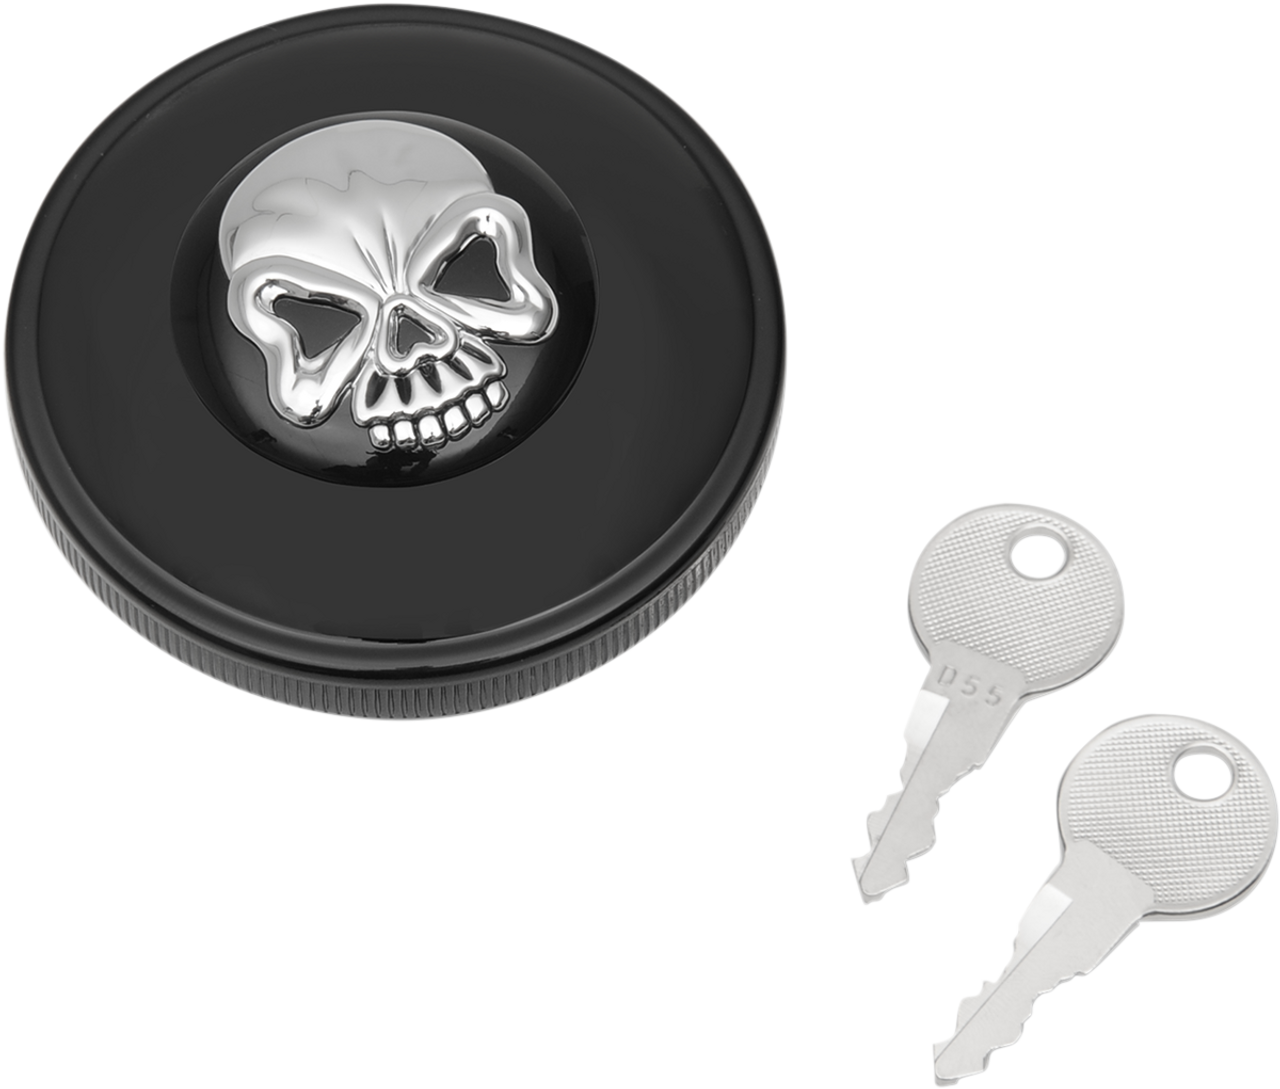 Non-Vented Skull Locking Gas Cap - Black